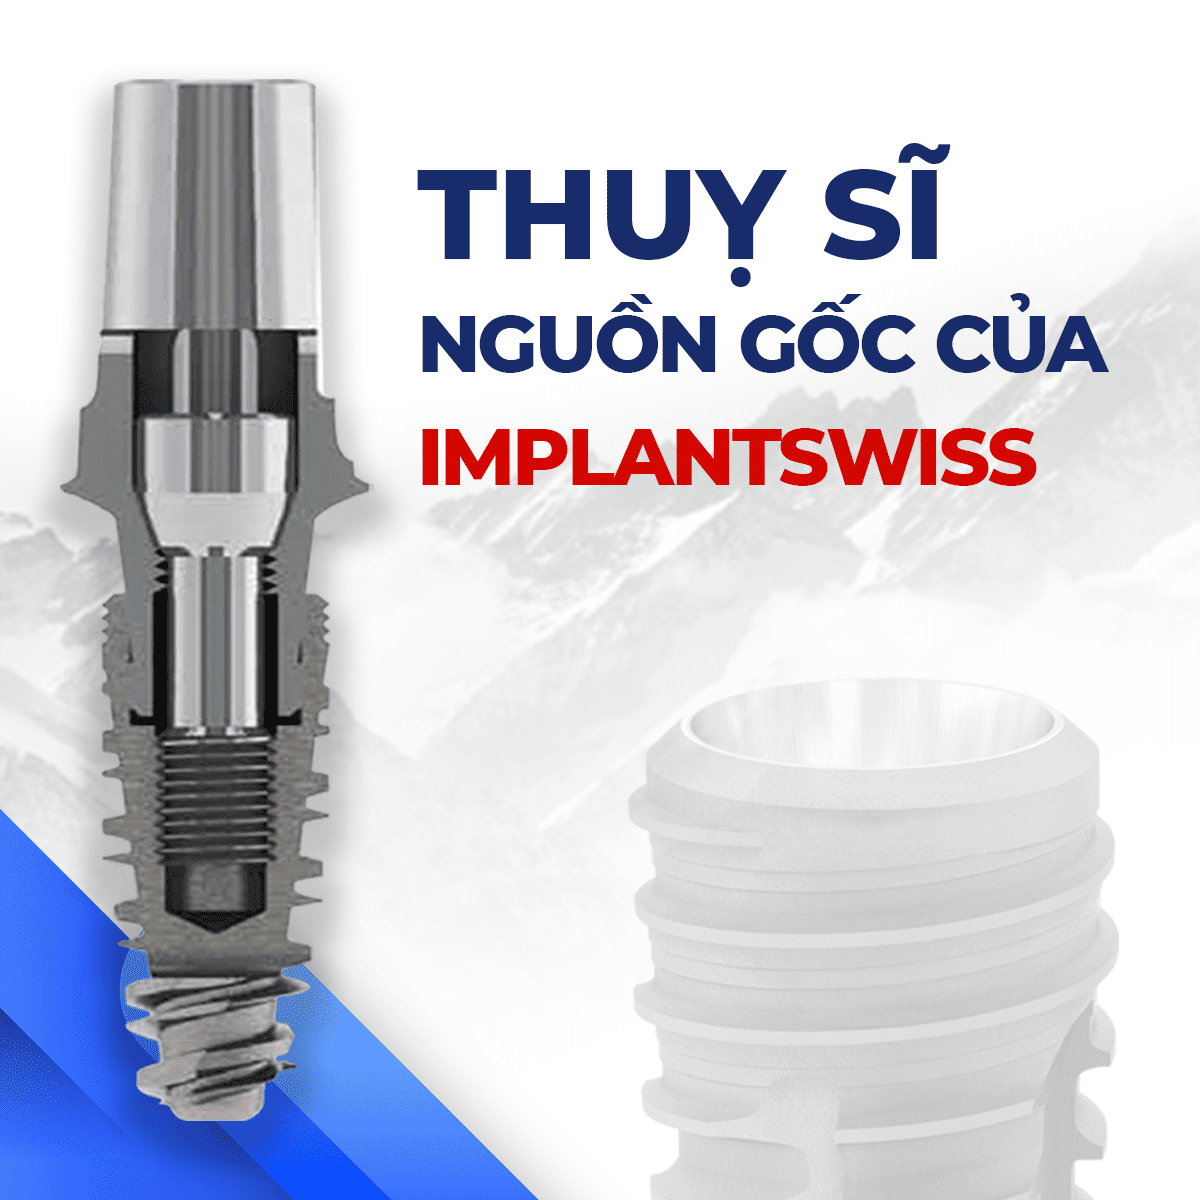 Trụ Implantswiss Thụy Sĩ - Chất lượng trụ Implant hàng đầu thế giới